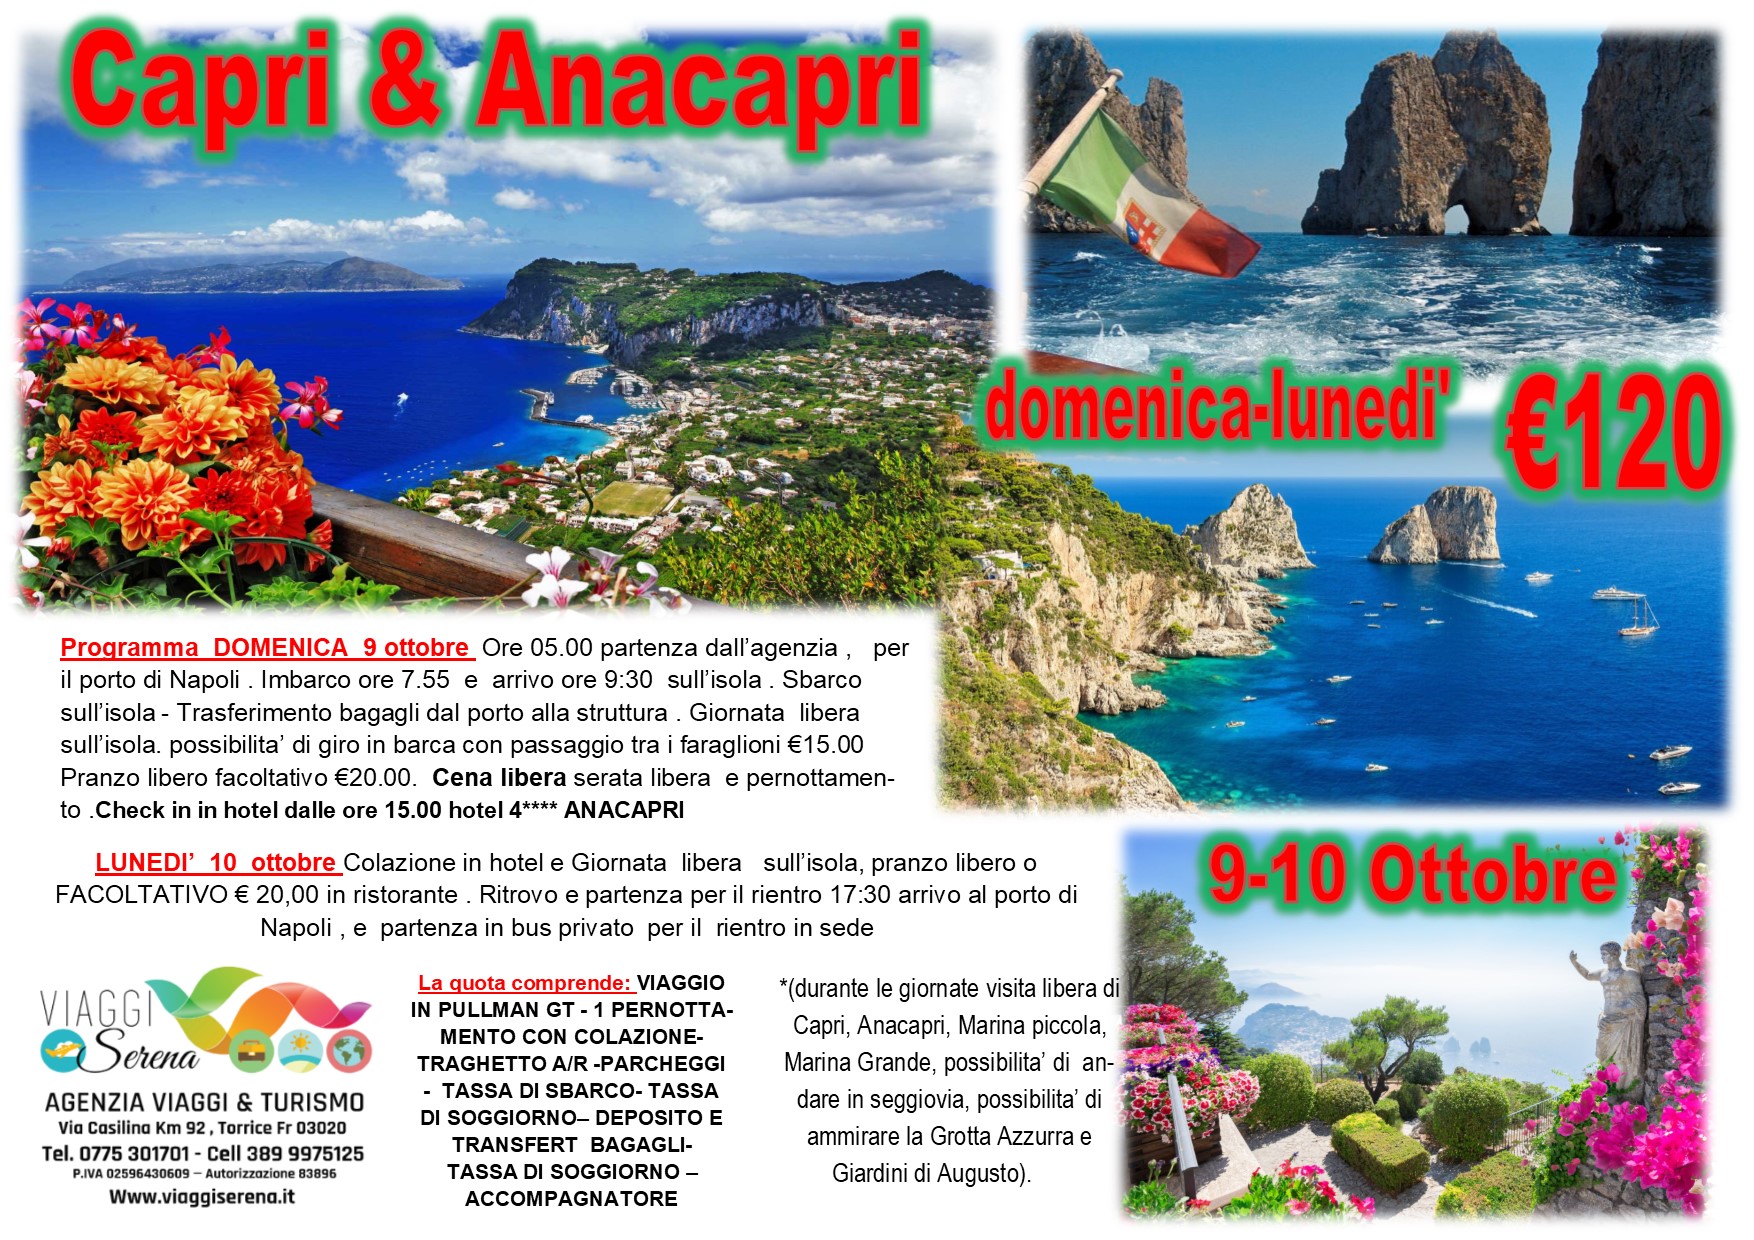 Viaggi di Gruppo: Capri e Anacapri “speciale Domenica e Lunedi’ ”  9-10 Ottobre € 120,00